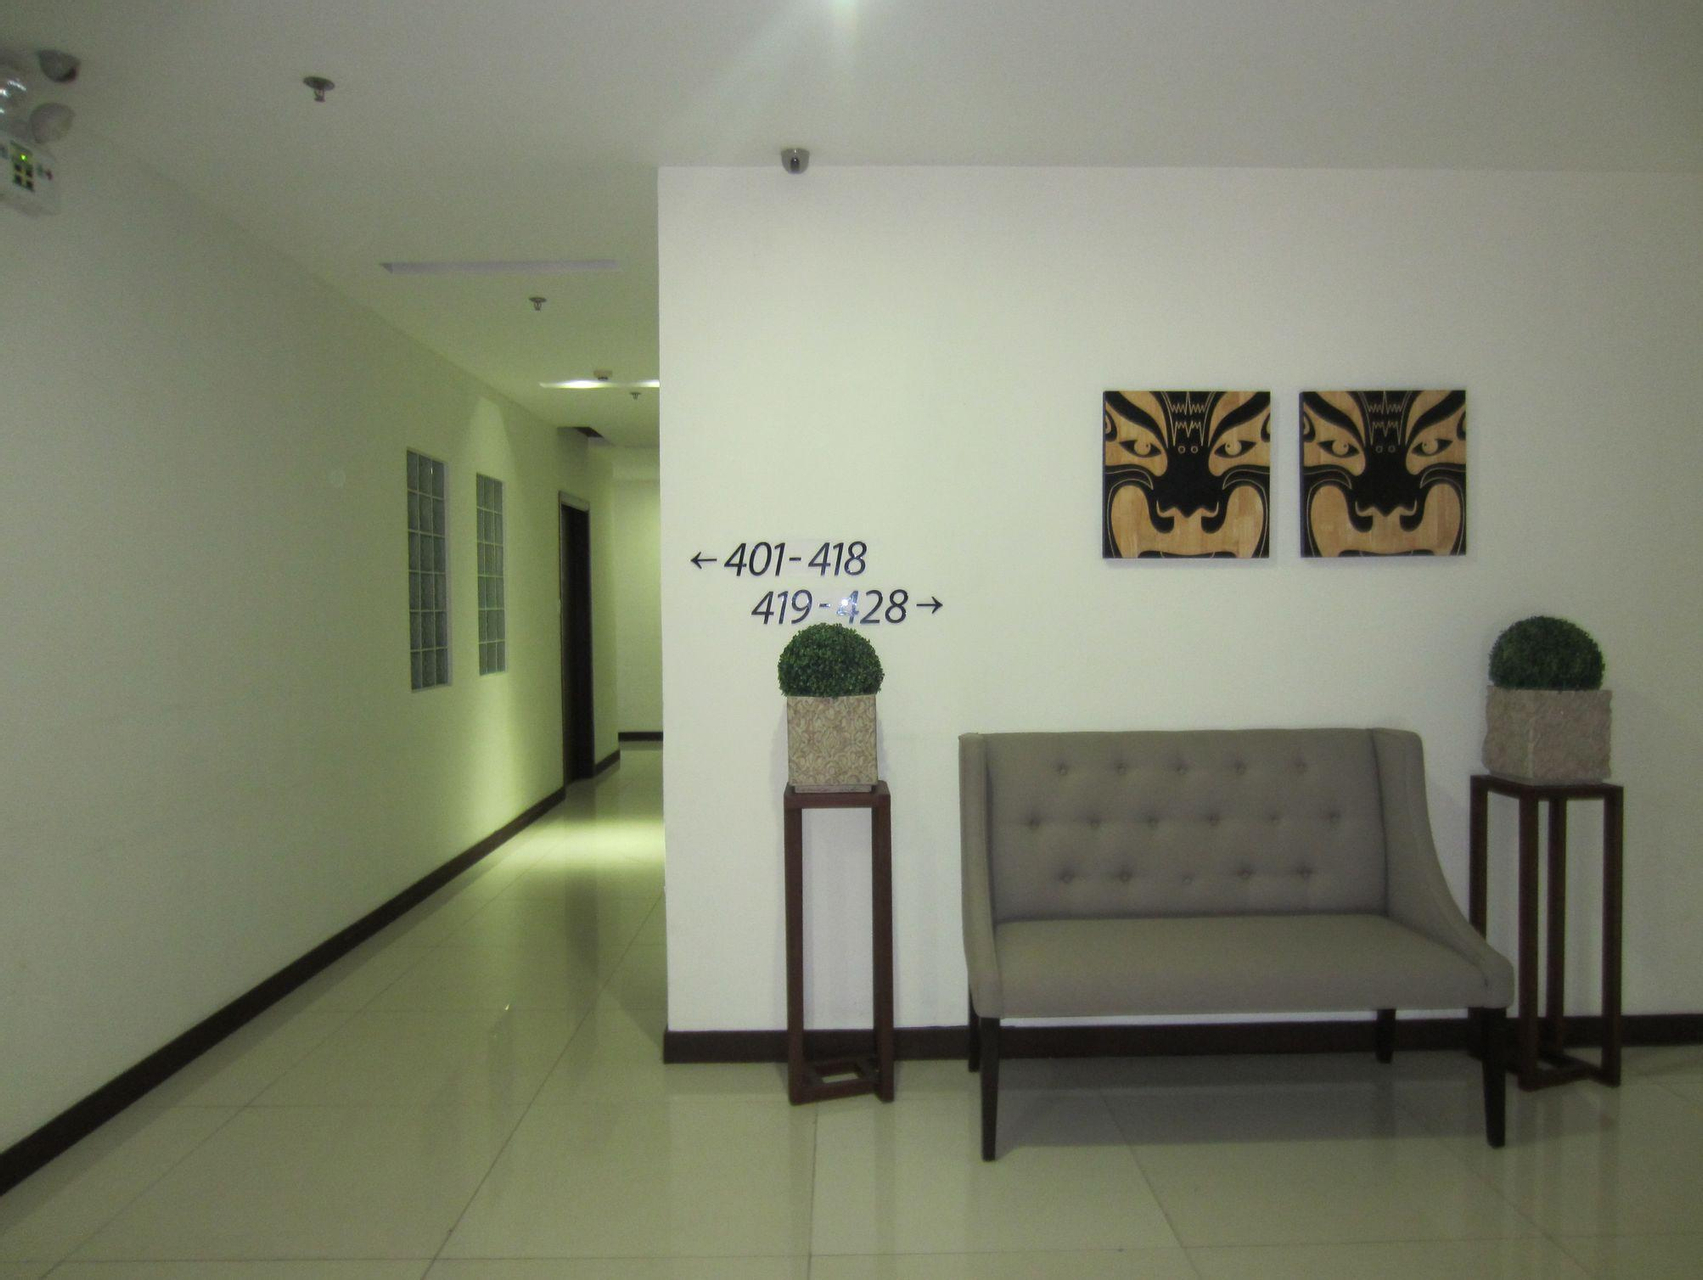 Public Area 4, Avenue Suites, Bacolod City